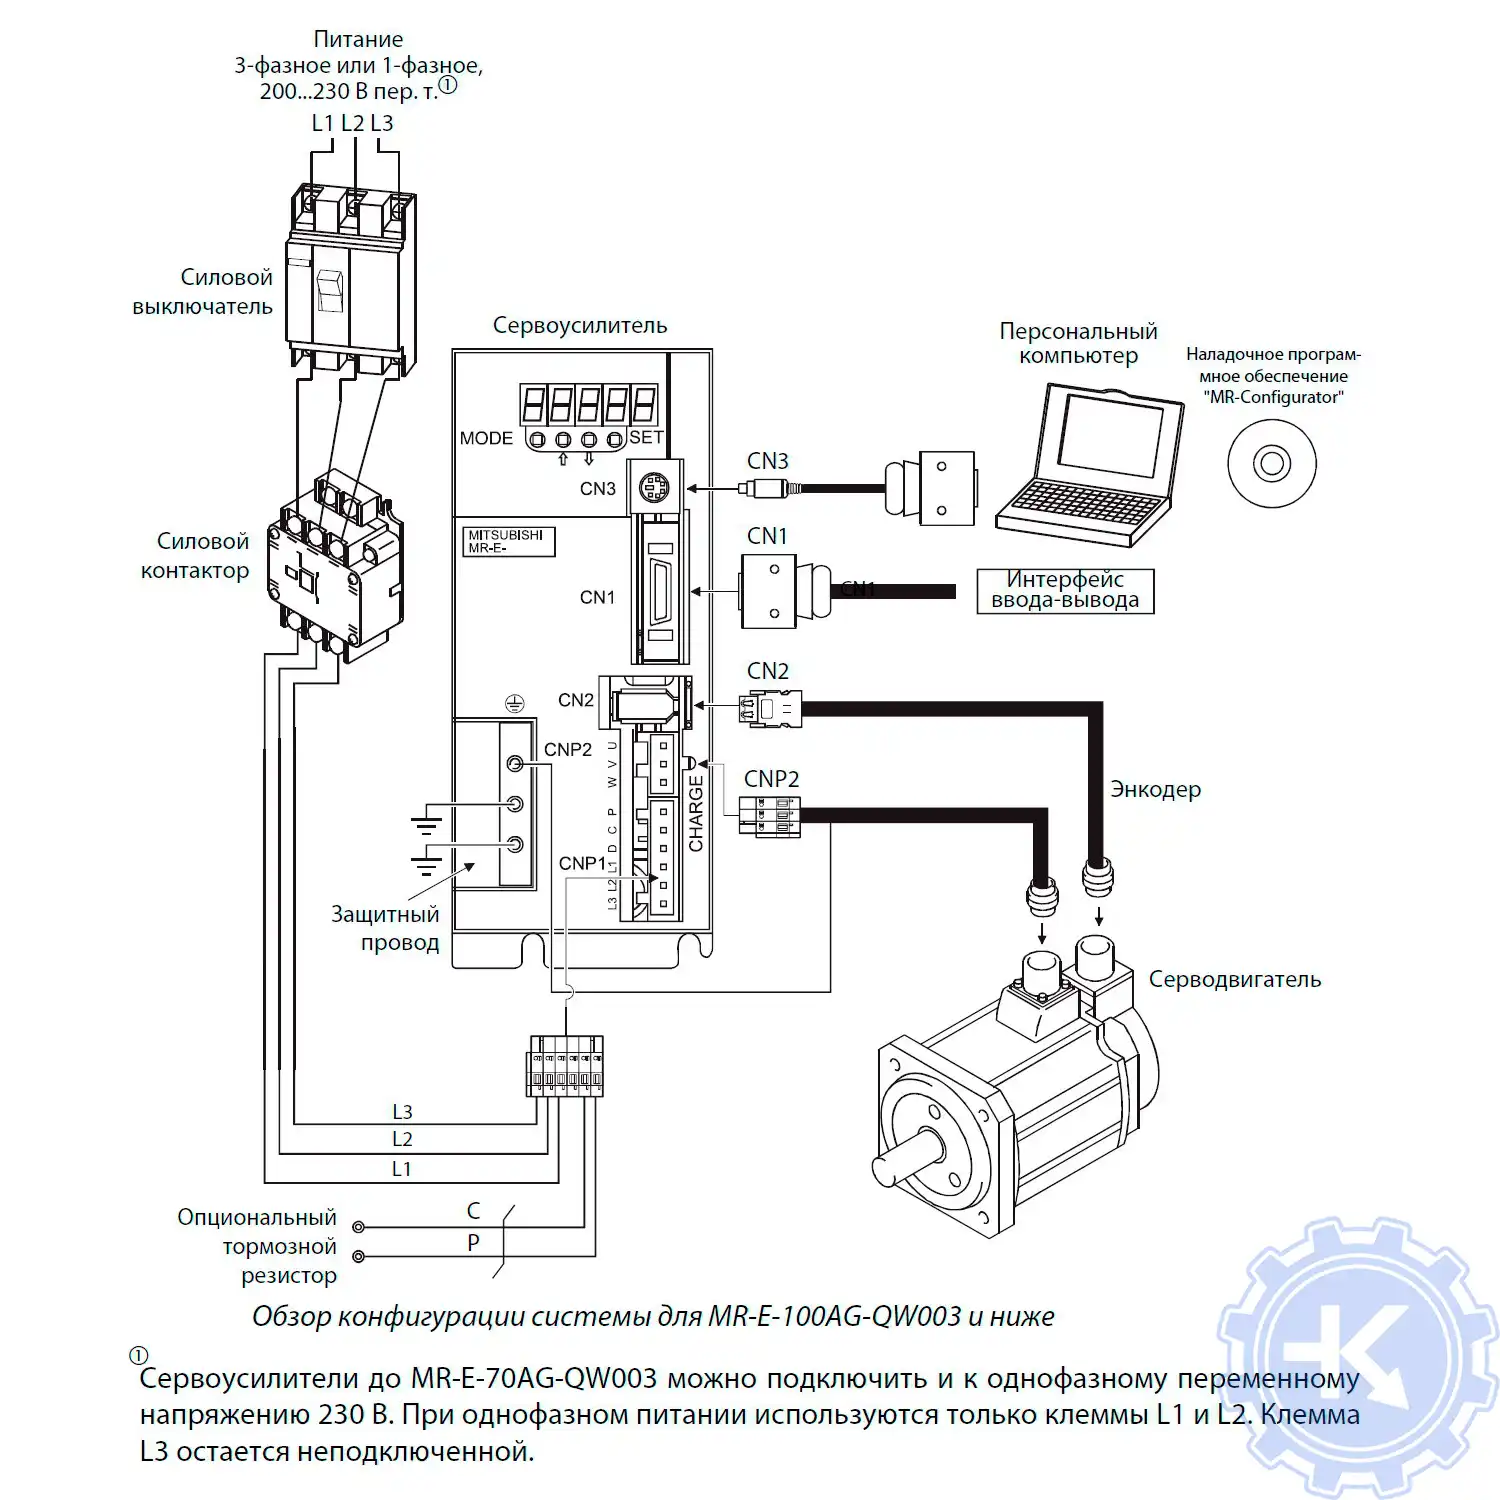 Конфигурация системы MR-E-100AG-QW003